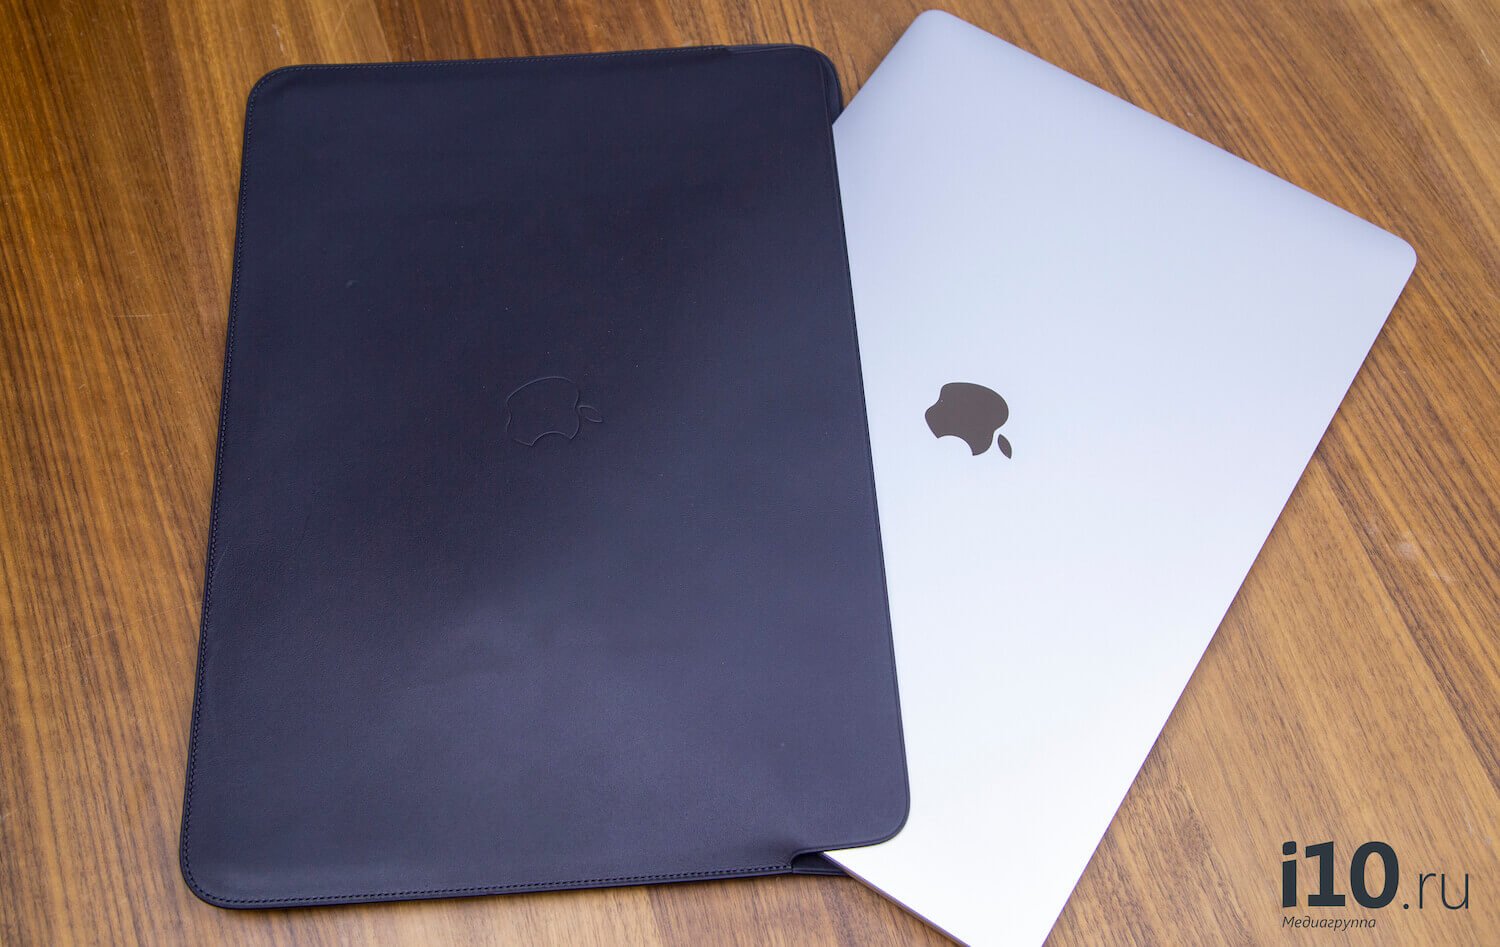 Стоит ли покупать MacBook Pro 16? Отзывы пользователей